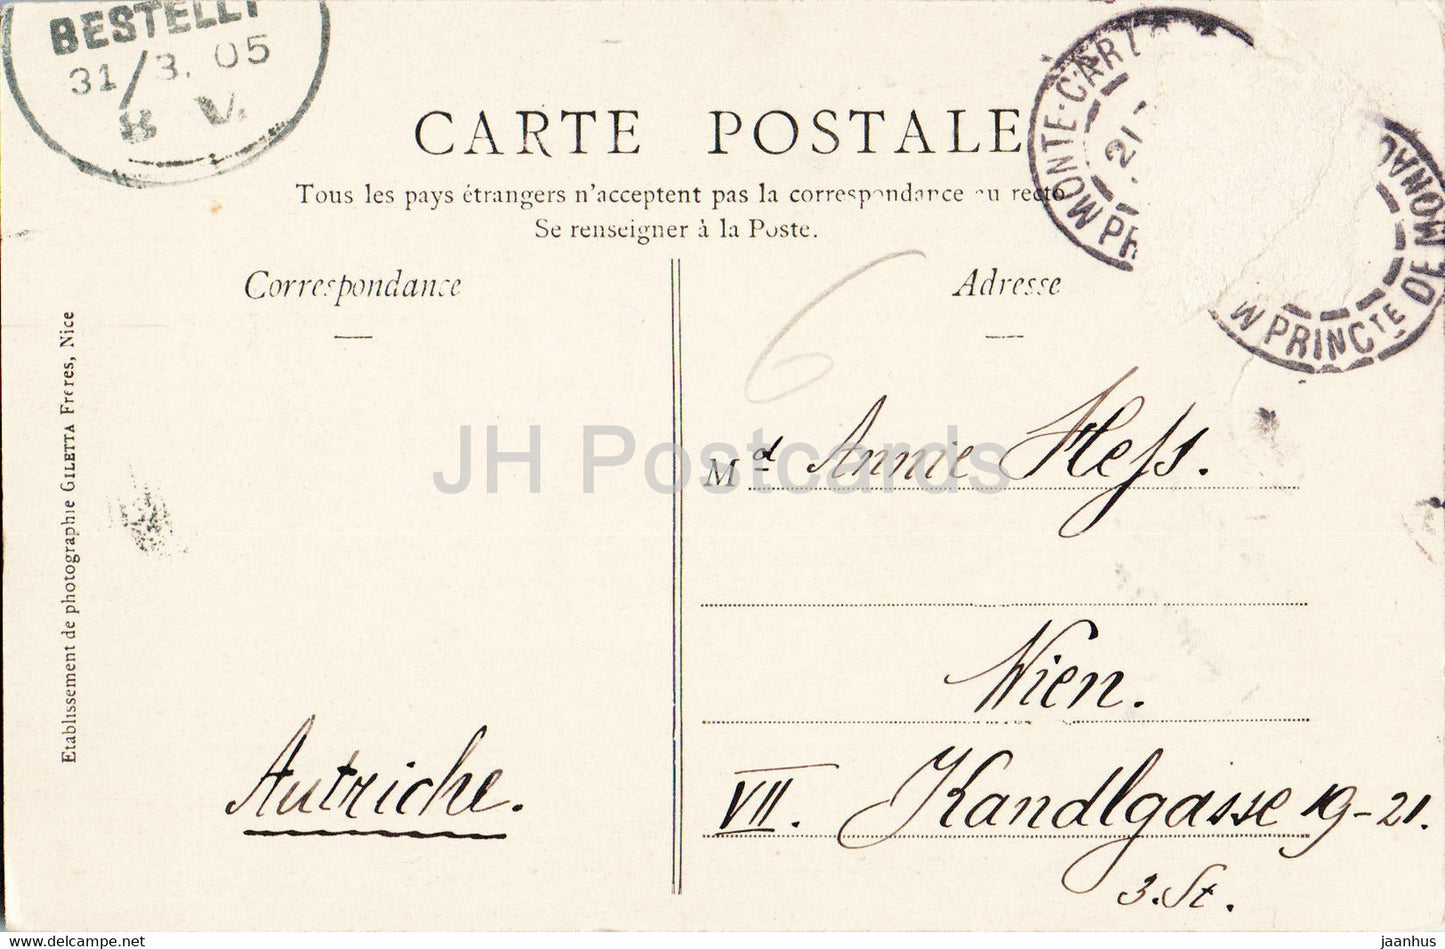 Monte Carlo - Theater et Terrasses - Collection Artistique - 708 - alte Postkarte - 1905 - Monaco - gebraucht